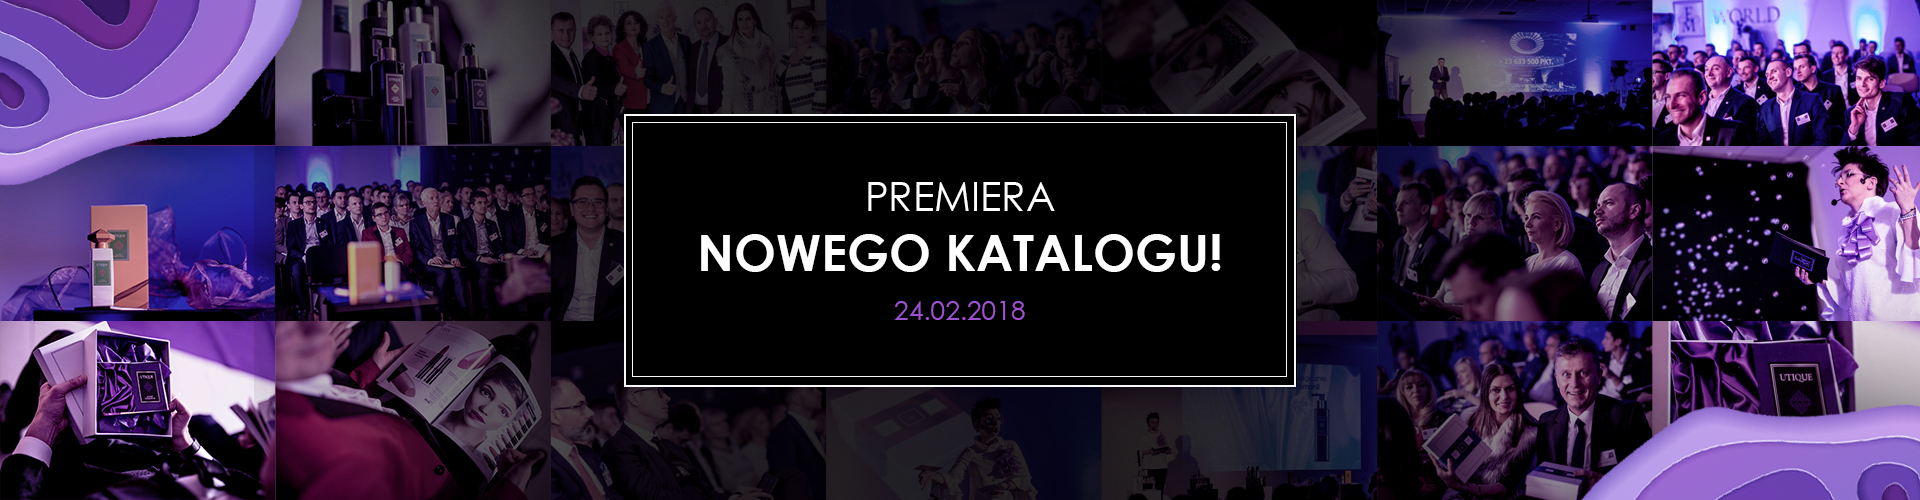 PREMIERA NOWEGO KATALOGU! FOTO/VIDEO